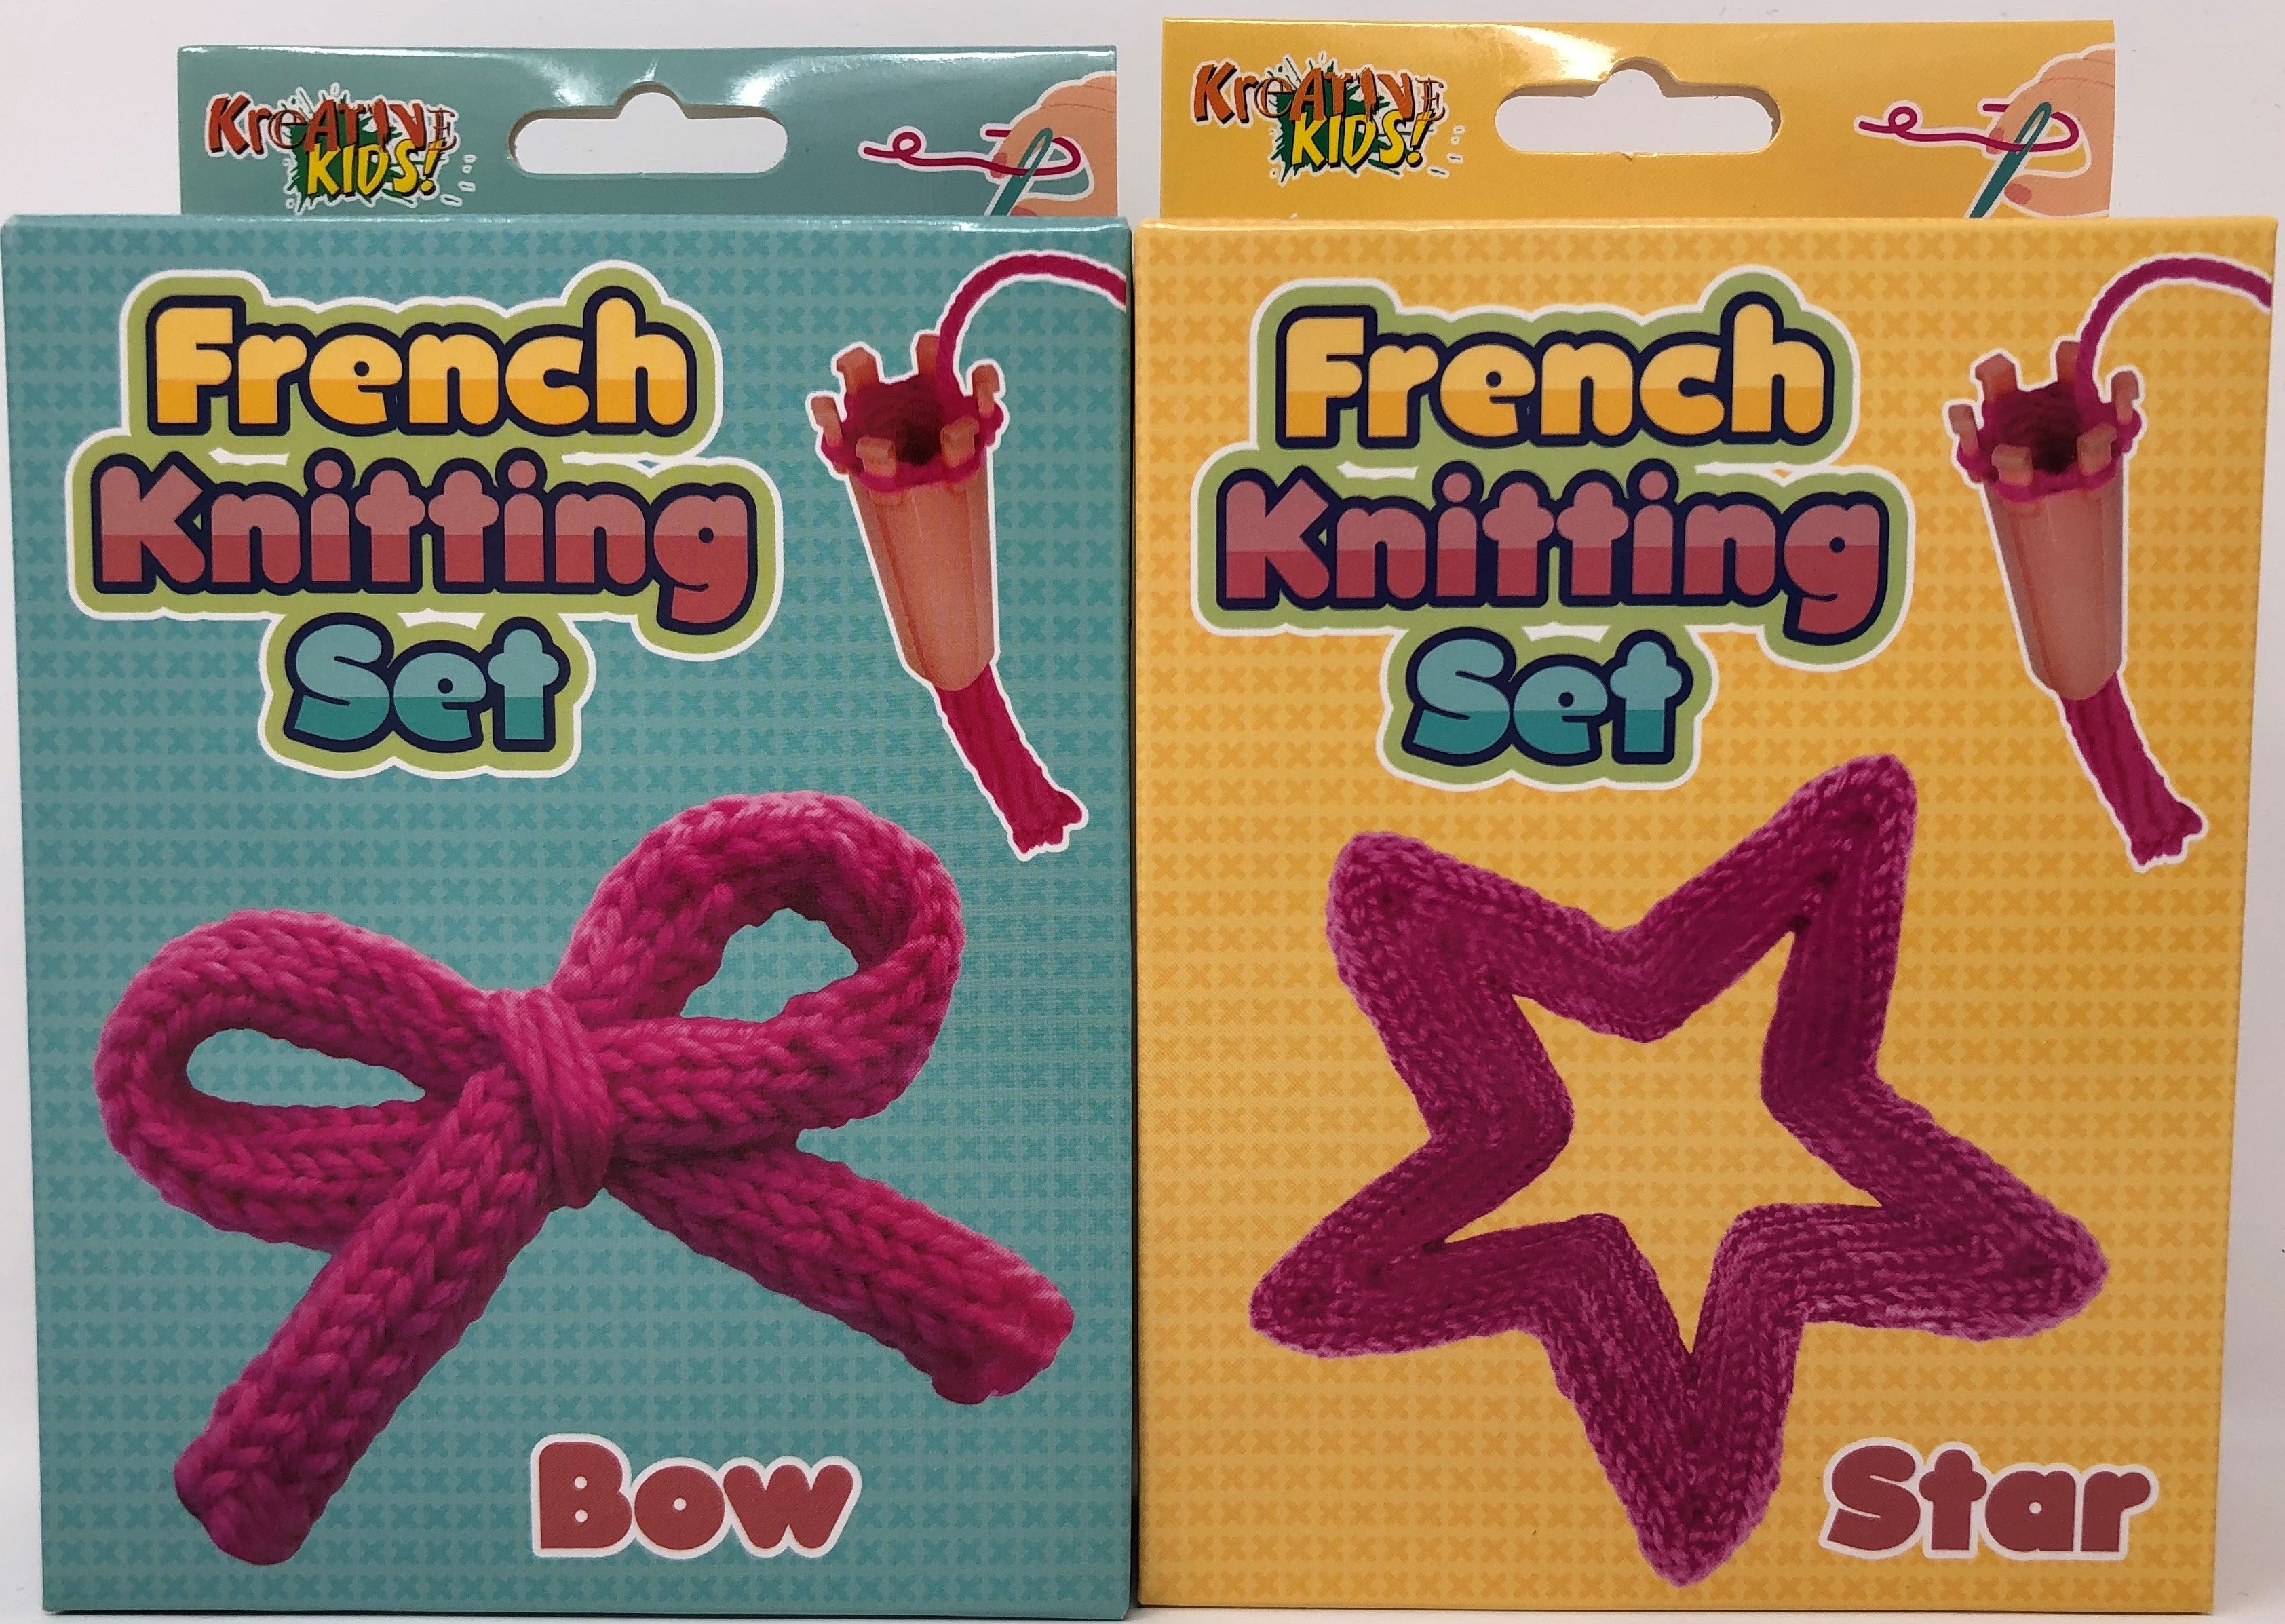 Kandytoys French Knitting Set - 2 designs